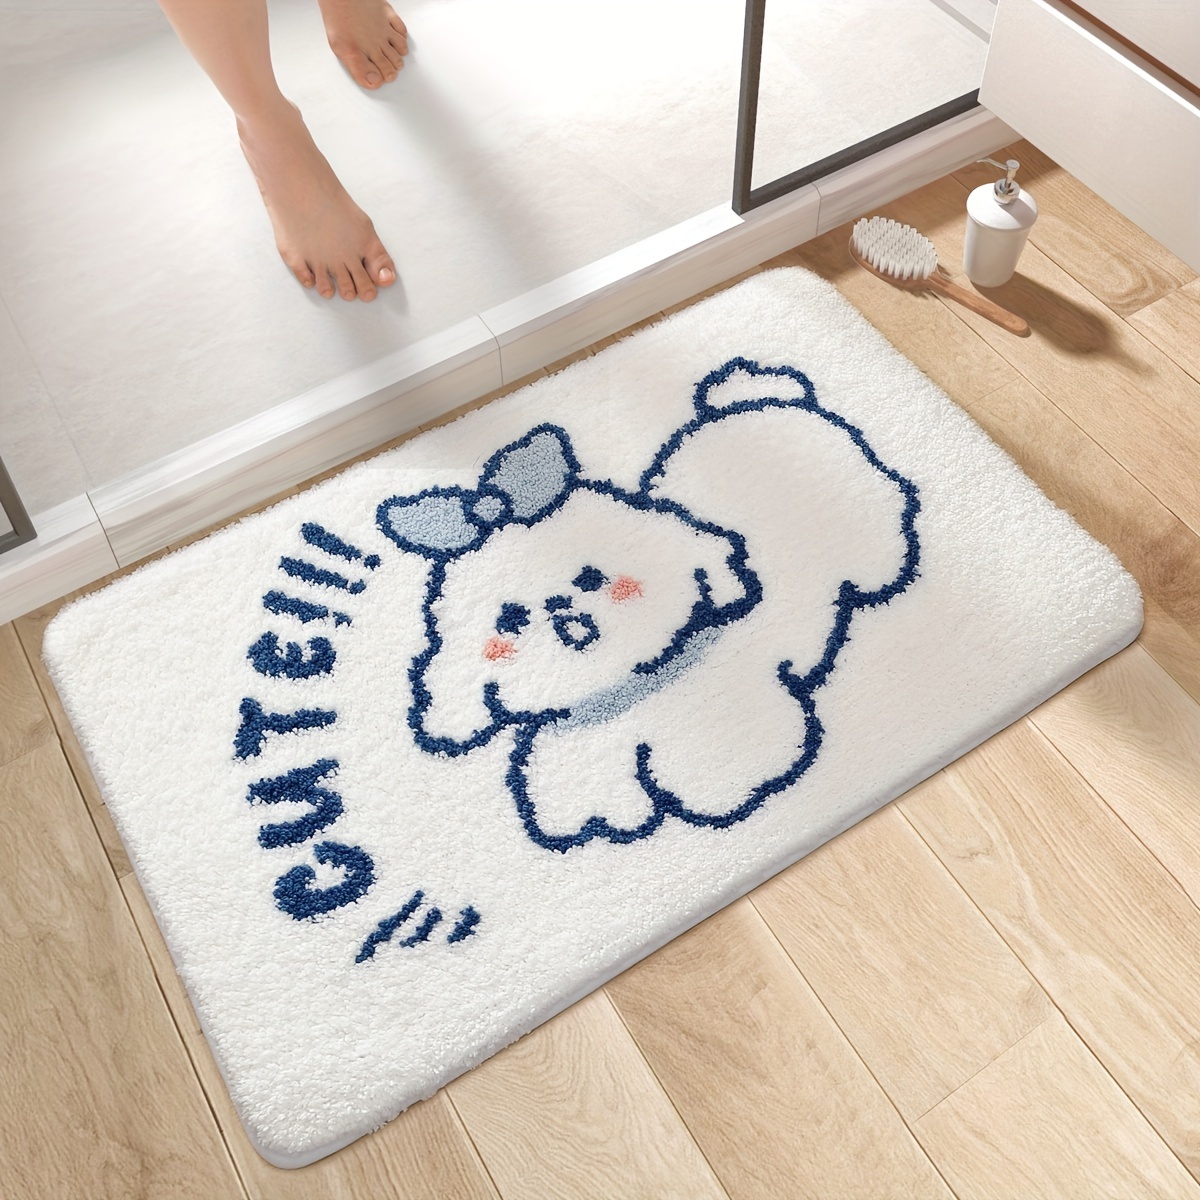 ☆新作入荷☆新品 Cupcake Bath Rugs Absorbent Non Slip Door Mats Soft Carpet Washab